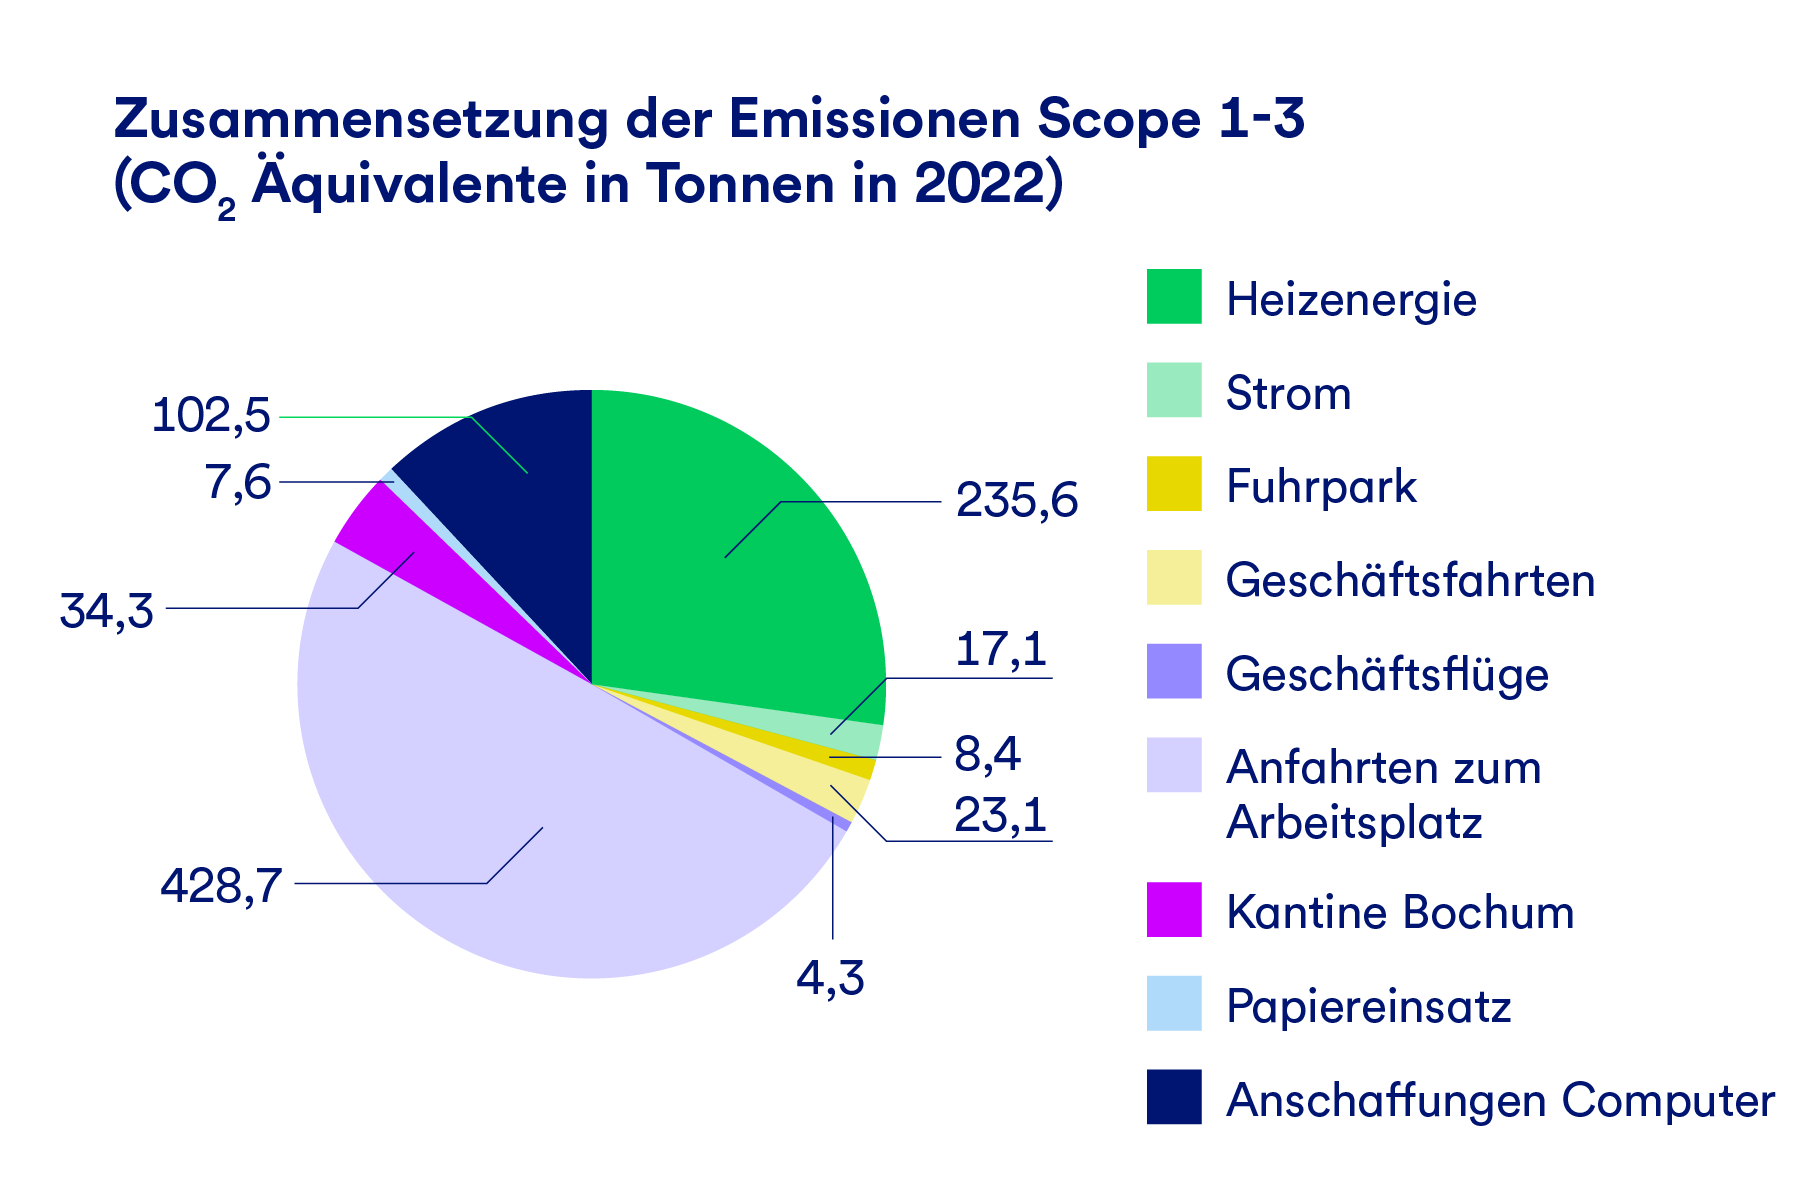 Die Grafik stellt die Zusammensetzung der Emissionen in CO2-Äquivalenten der Scopes 1-3 dar. Etwa die Hälfte entsteht aus der Anfahrt zum Arbeitsplatz.